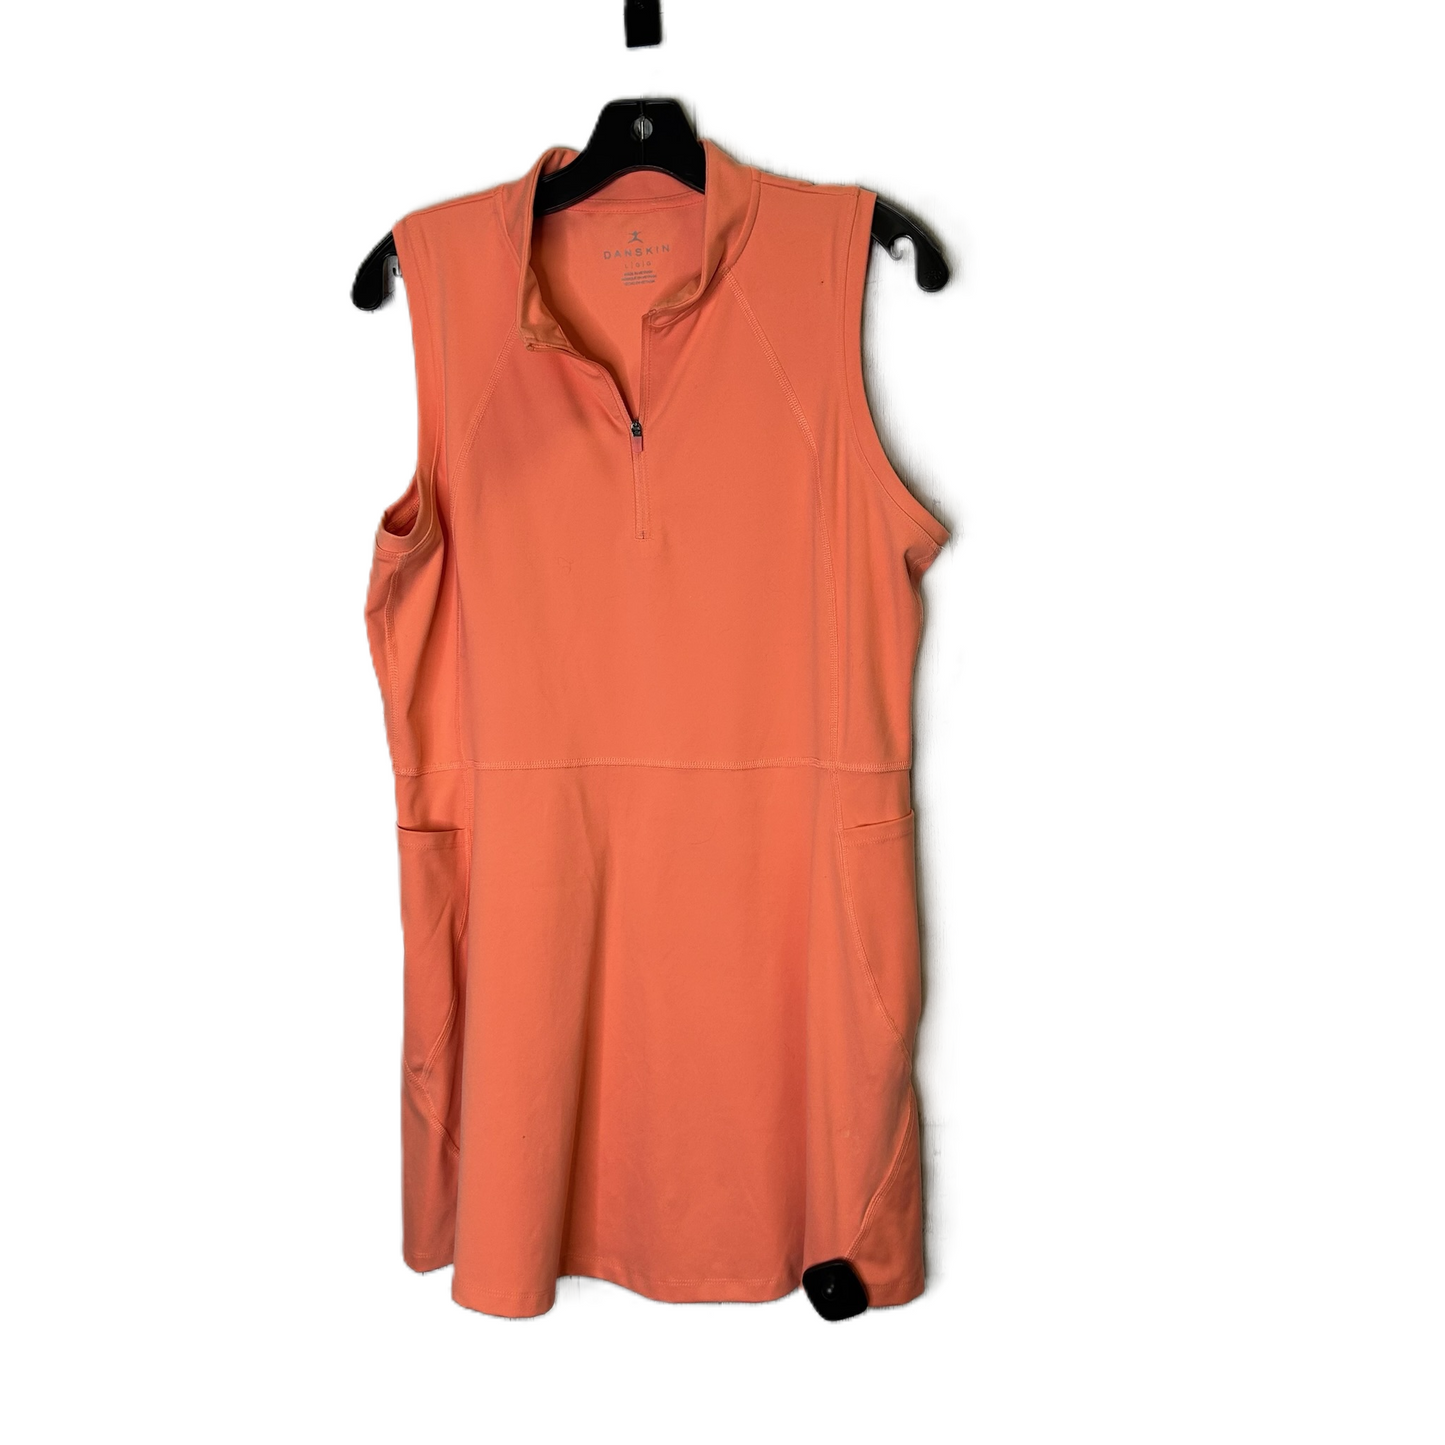 Orange Athletic Dress By Danskin, Size: L